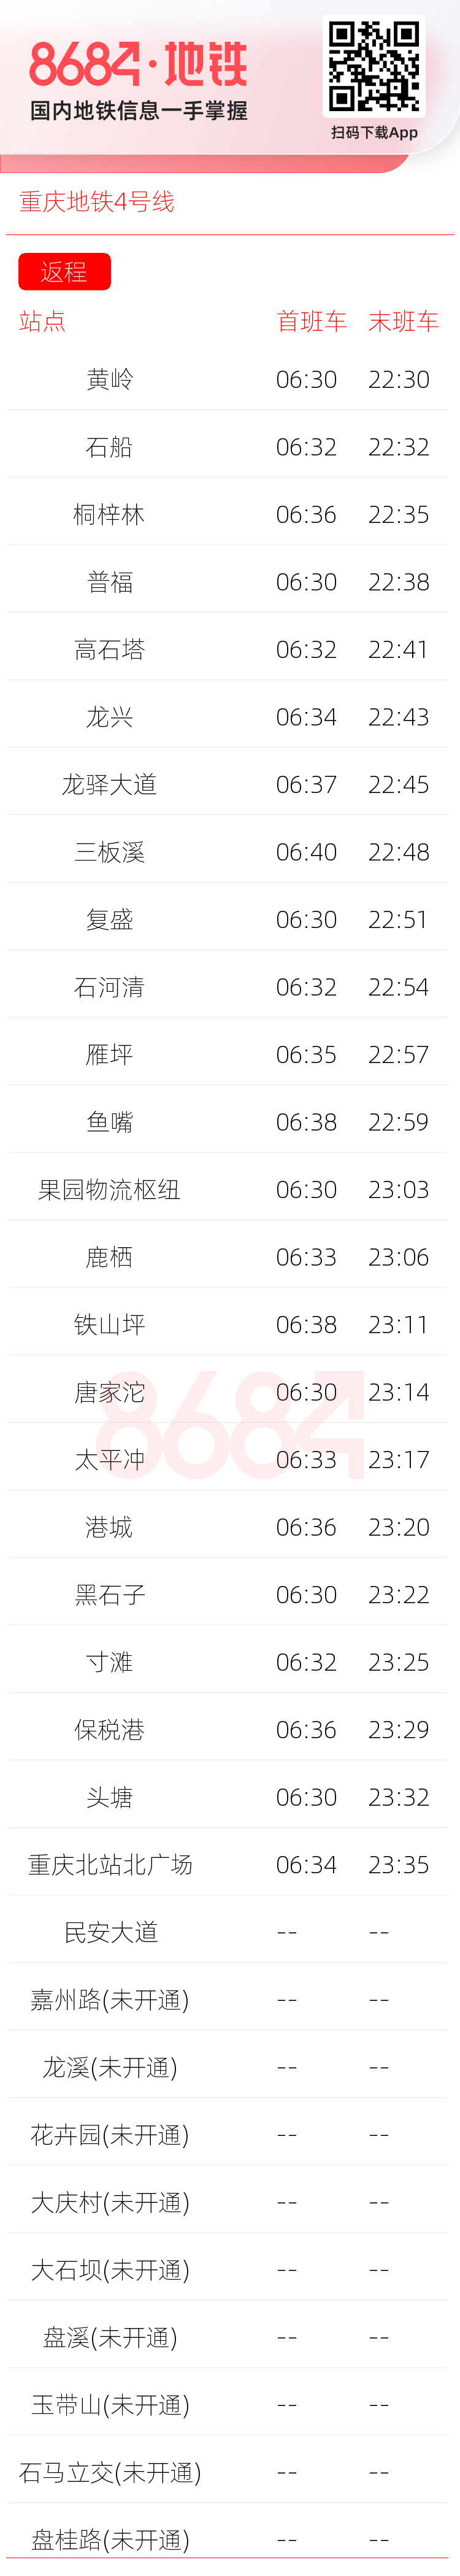 重庆地铁4号线运营时间表